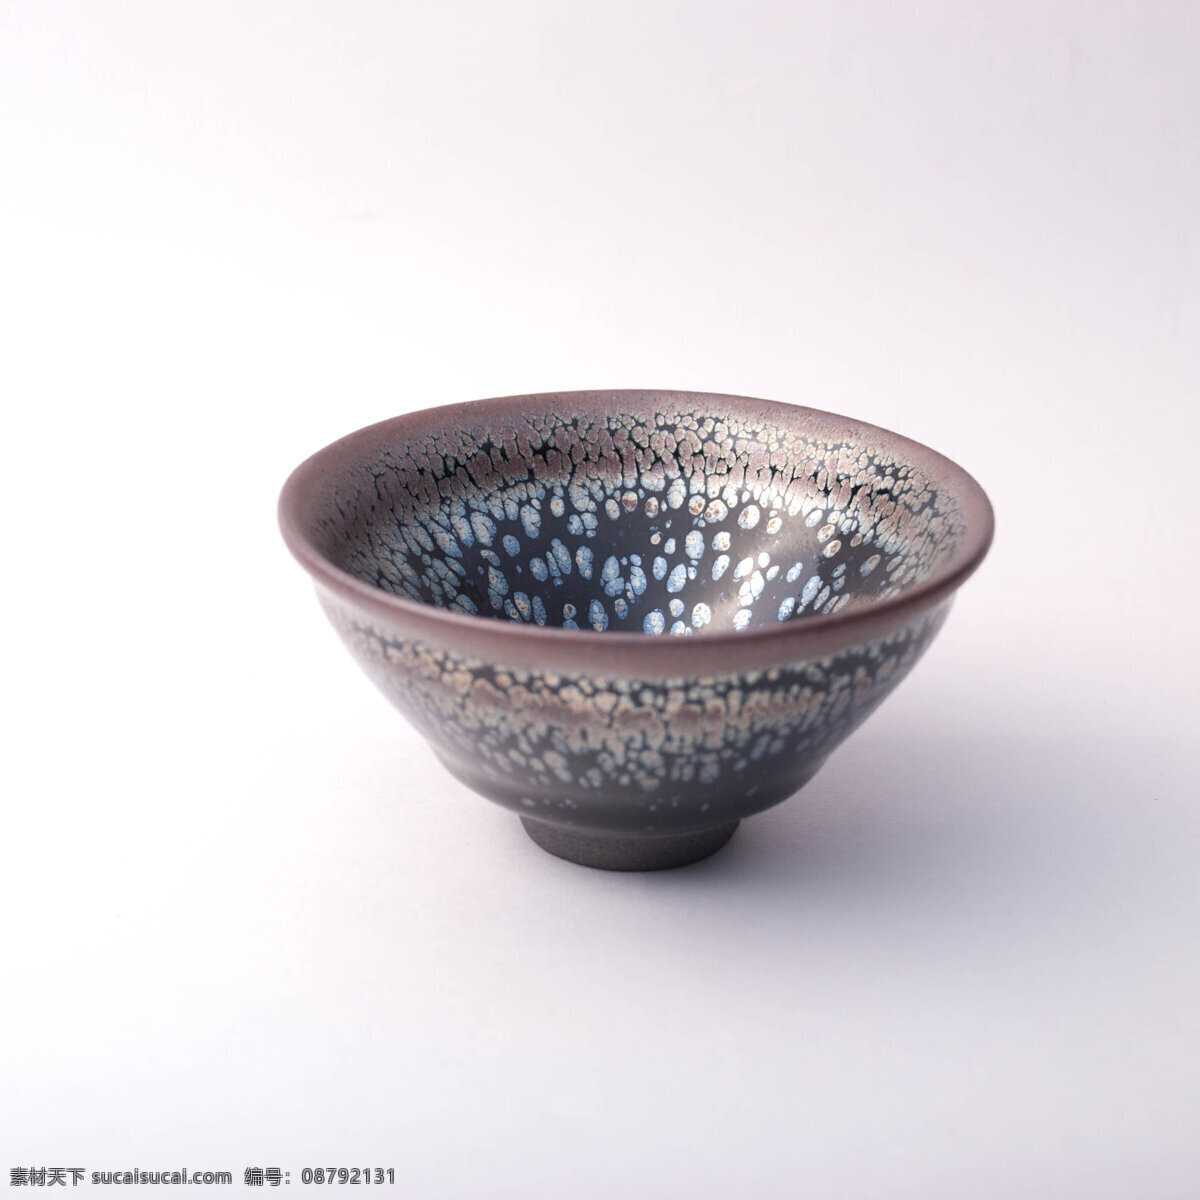 陶瓷碗 碗 古代的碗 茶碗 瓷碗 装饰碗 陶瓷制品 餐具厨具 餐饮美食